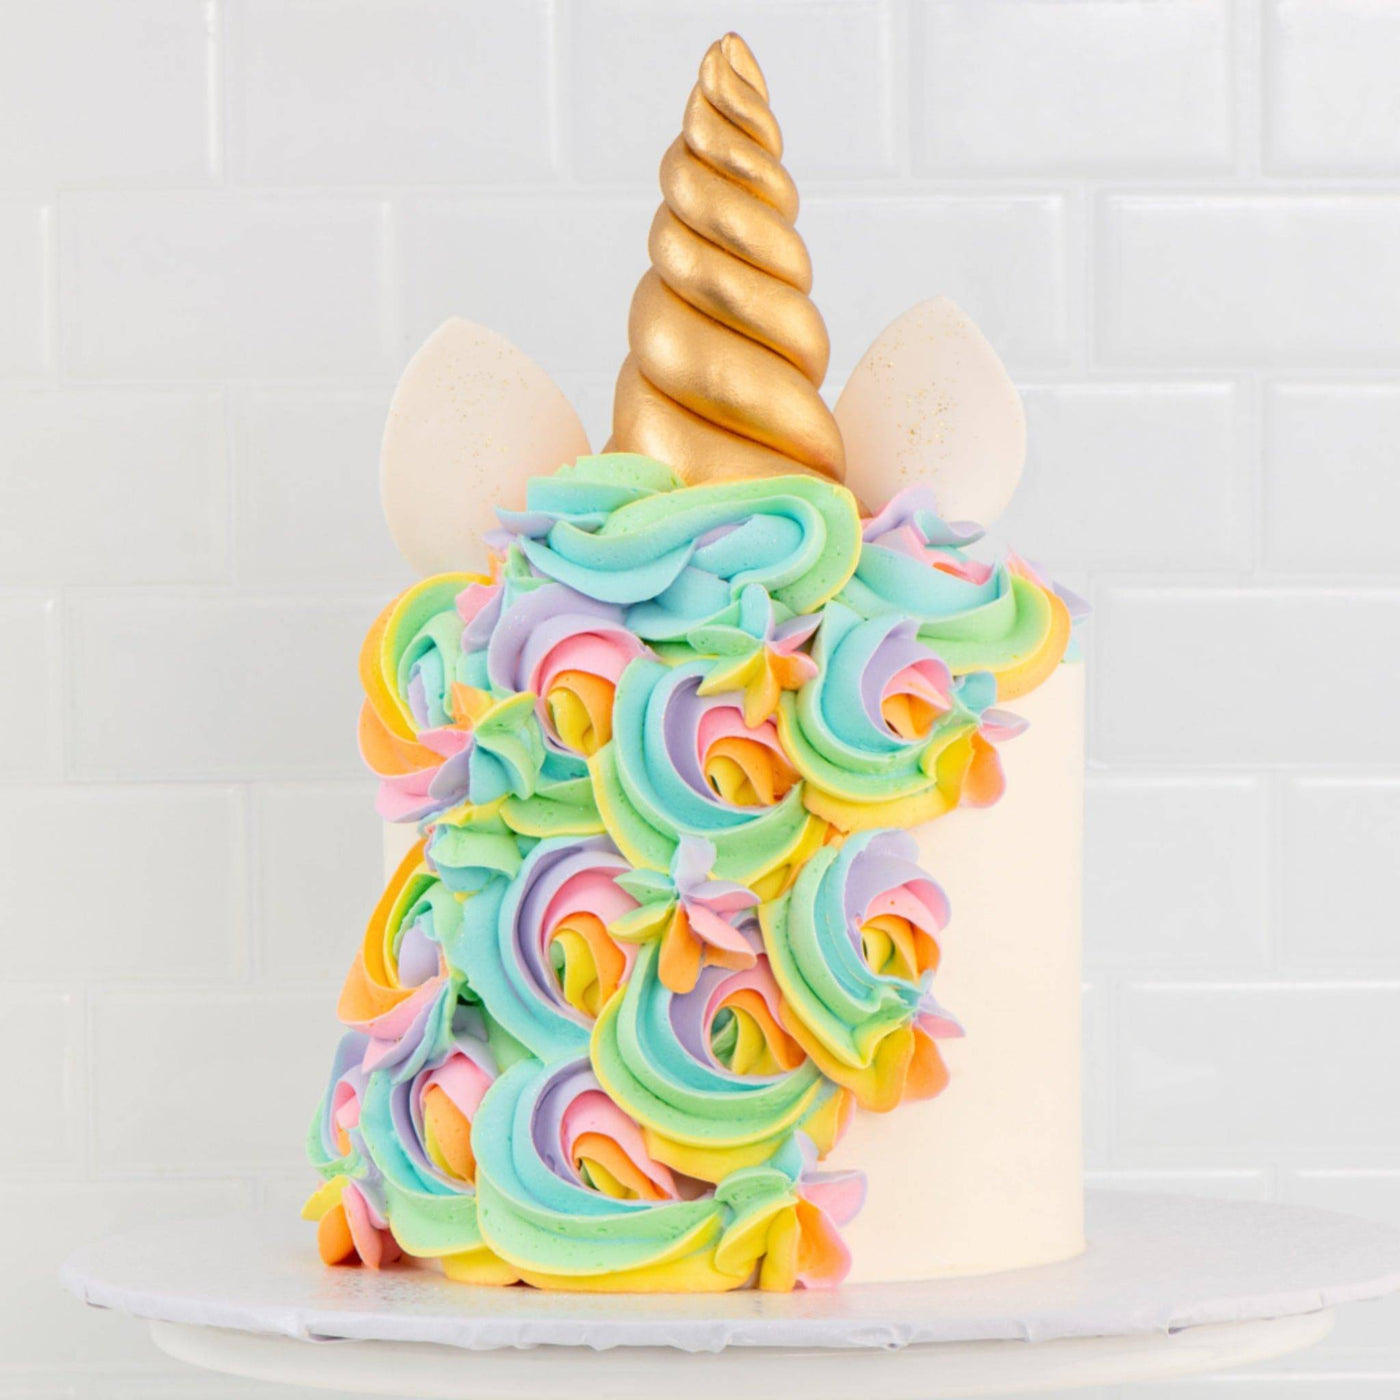 Magical Unicorn Cake - Sweet E's Bake Shop